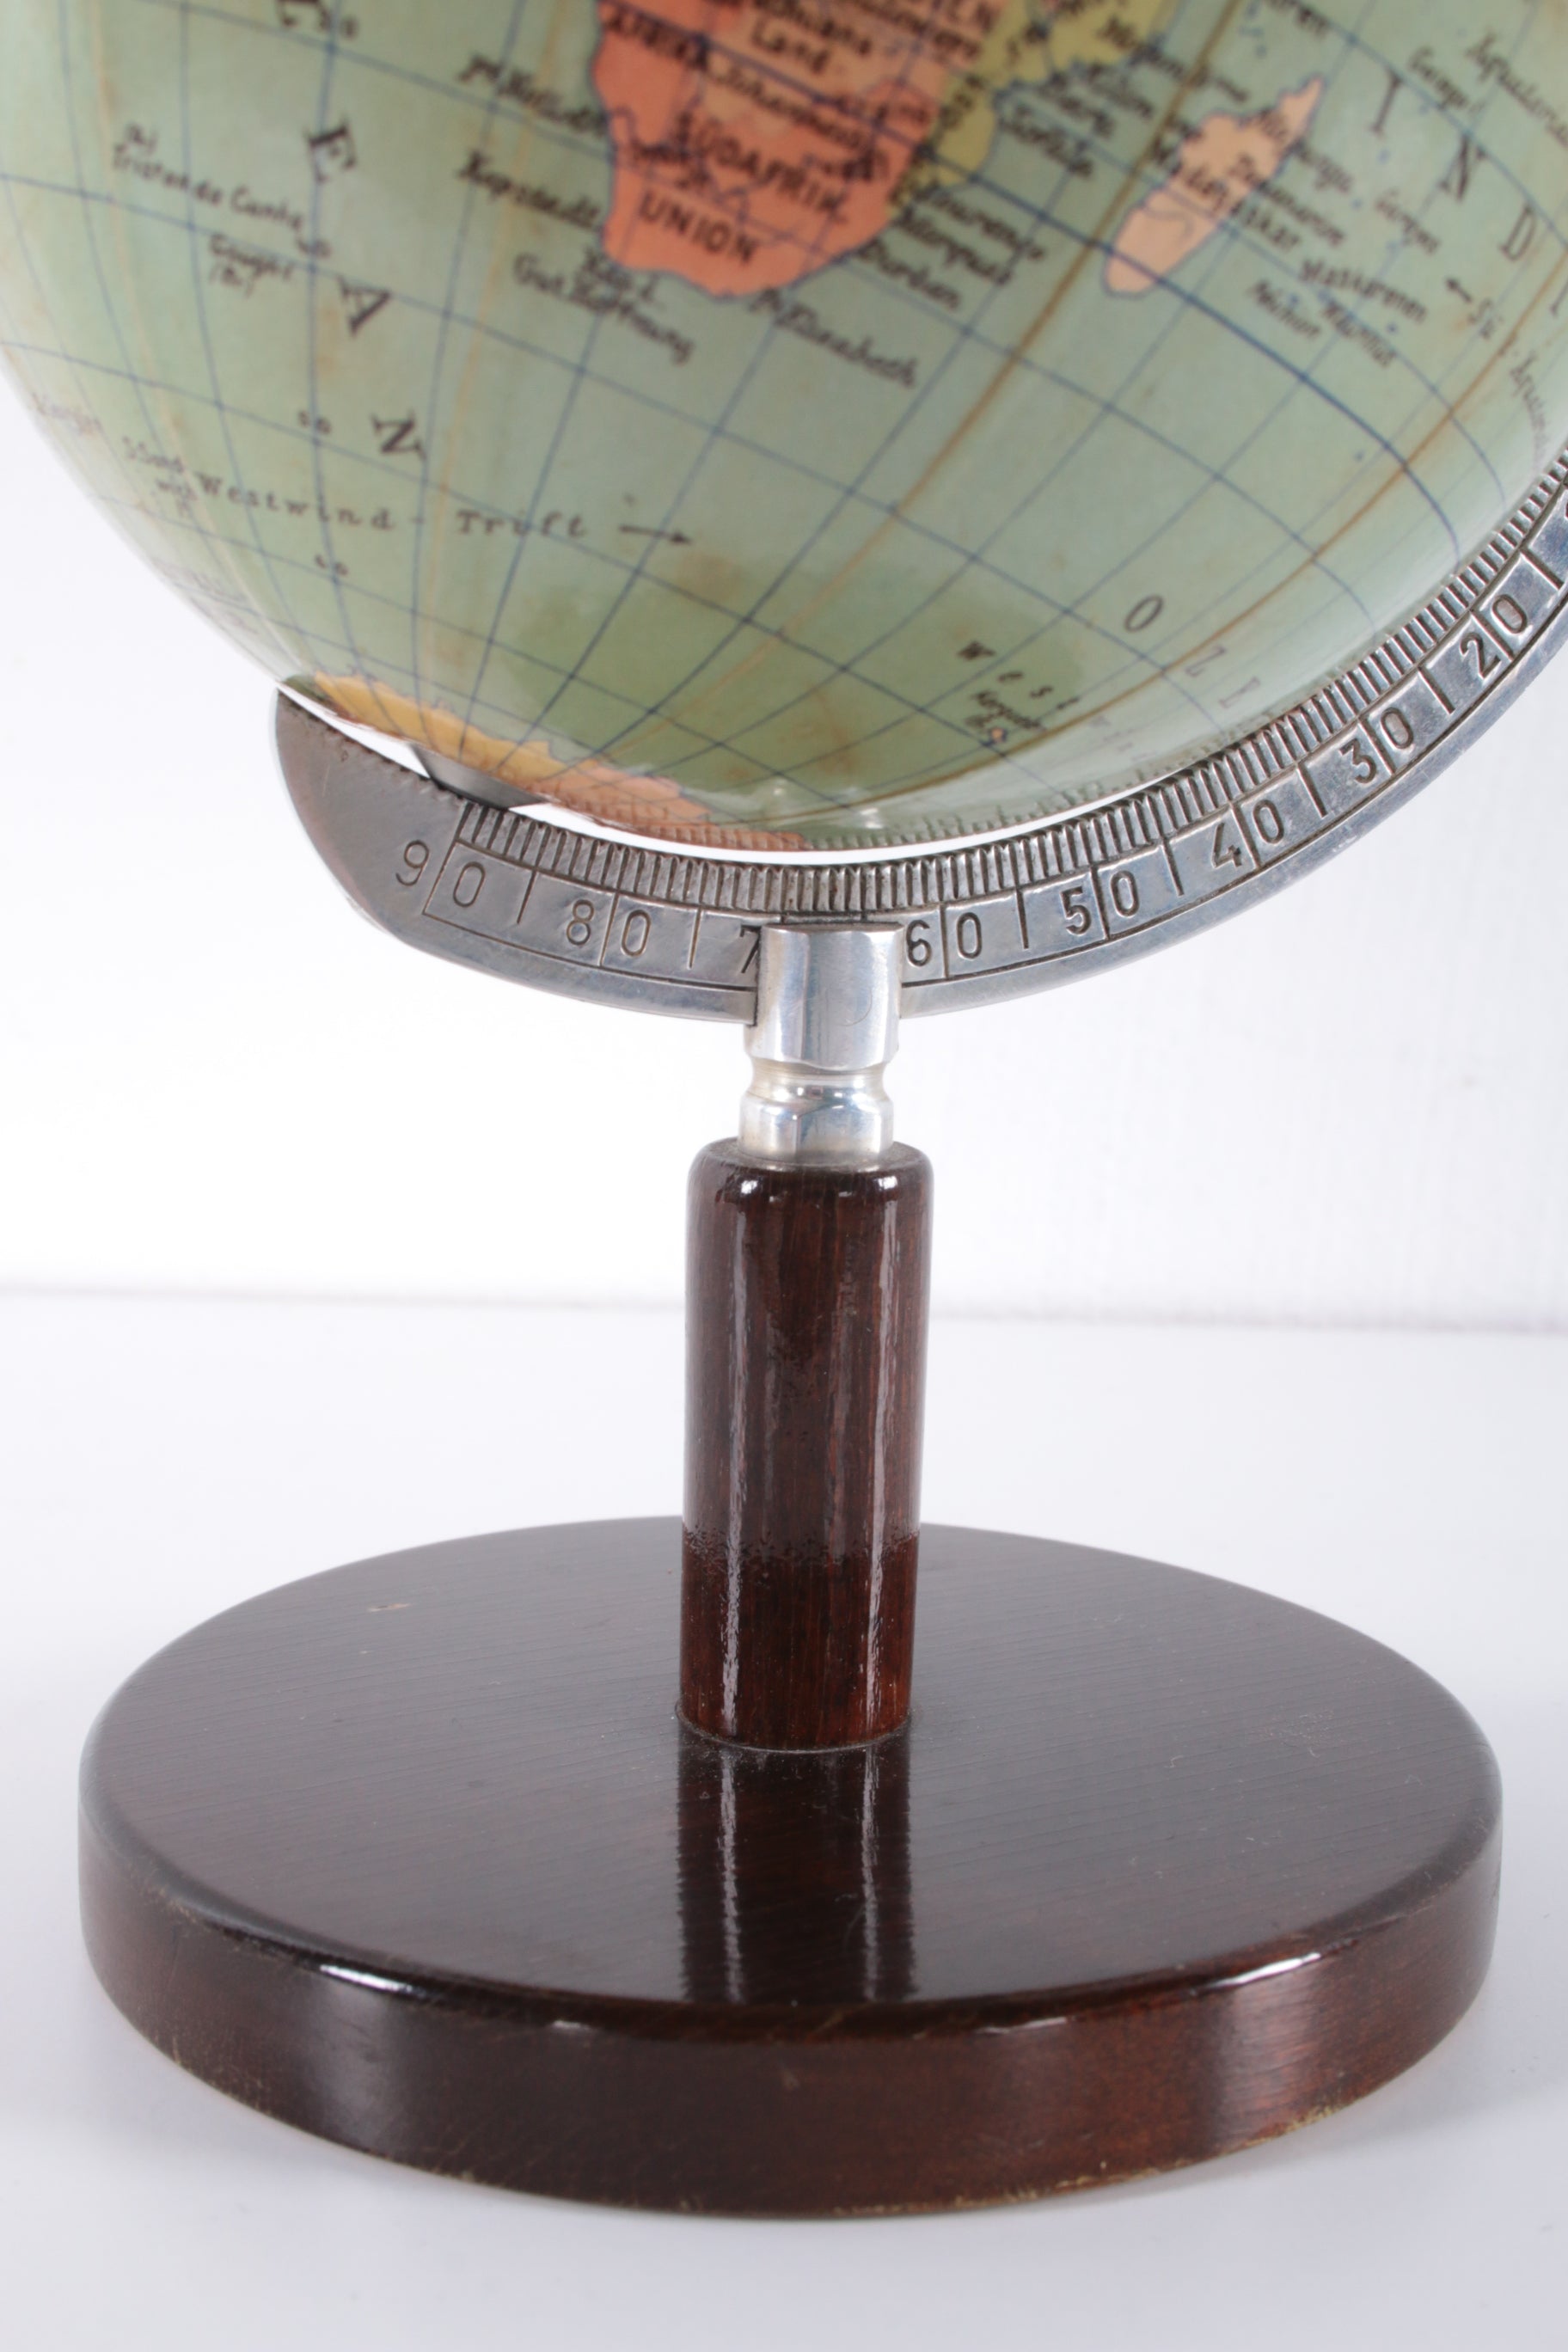 Mini Globe Columbus op houten voetje,jaren 50